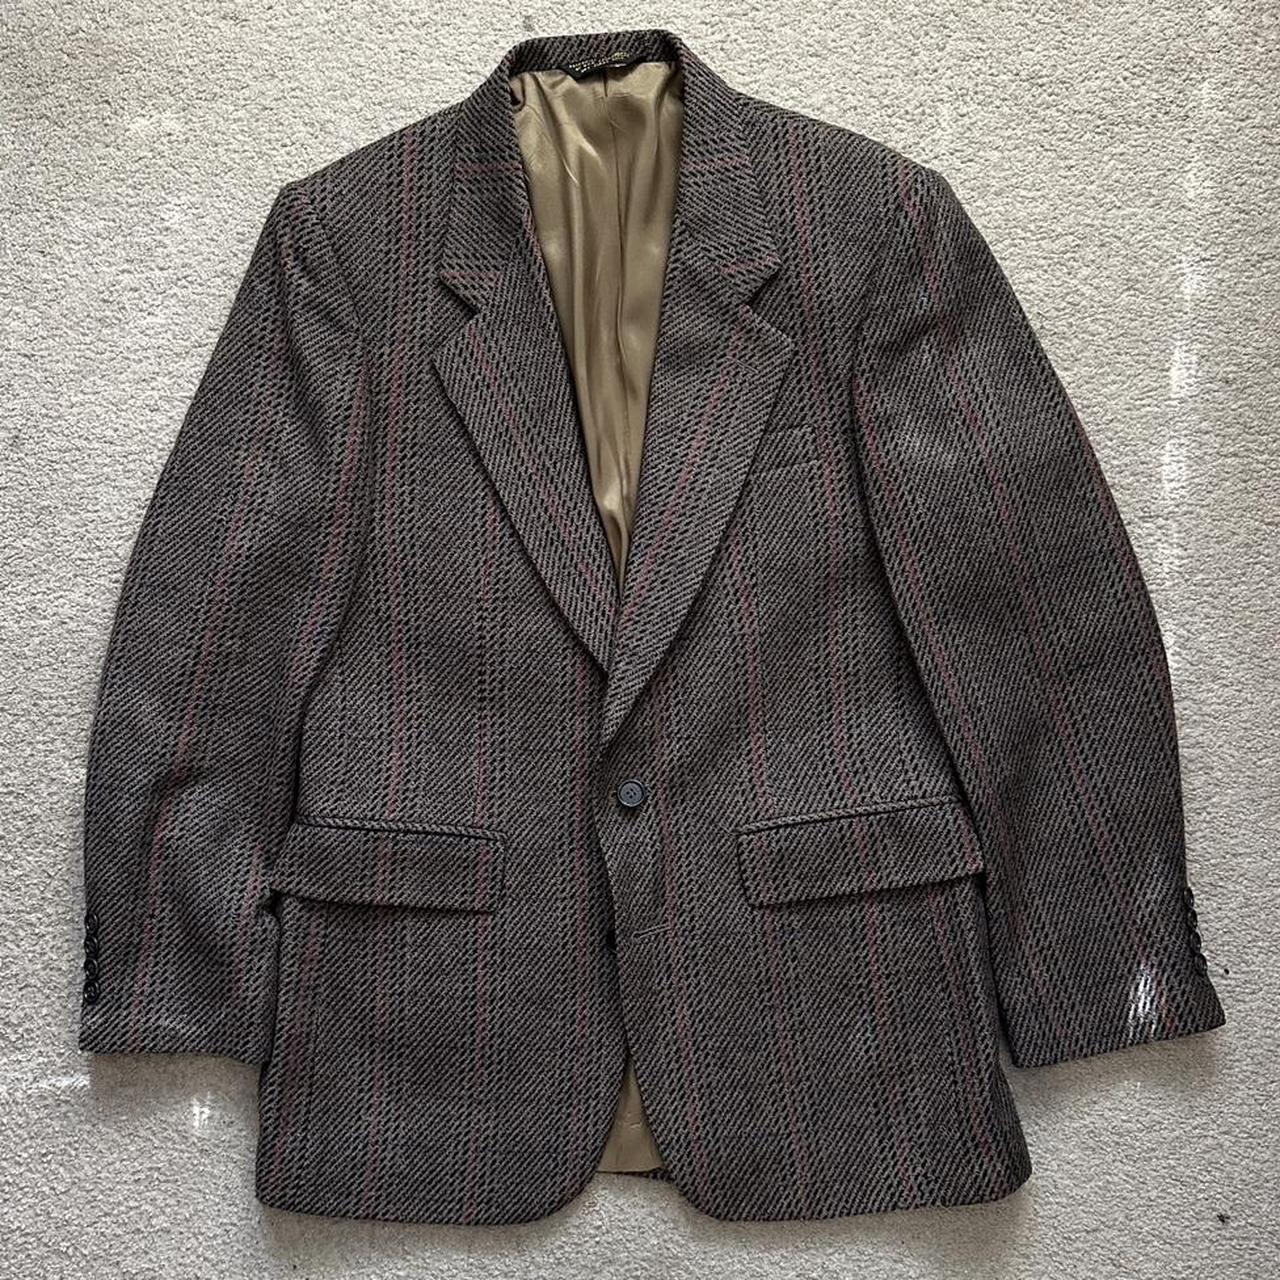 Vintage Mcrae’s wool/tweed blazer. Sz 39R. In very... - Depop